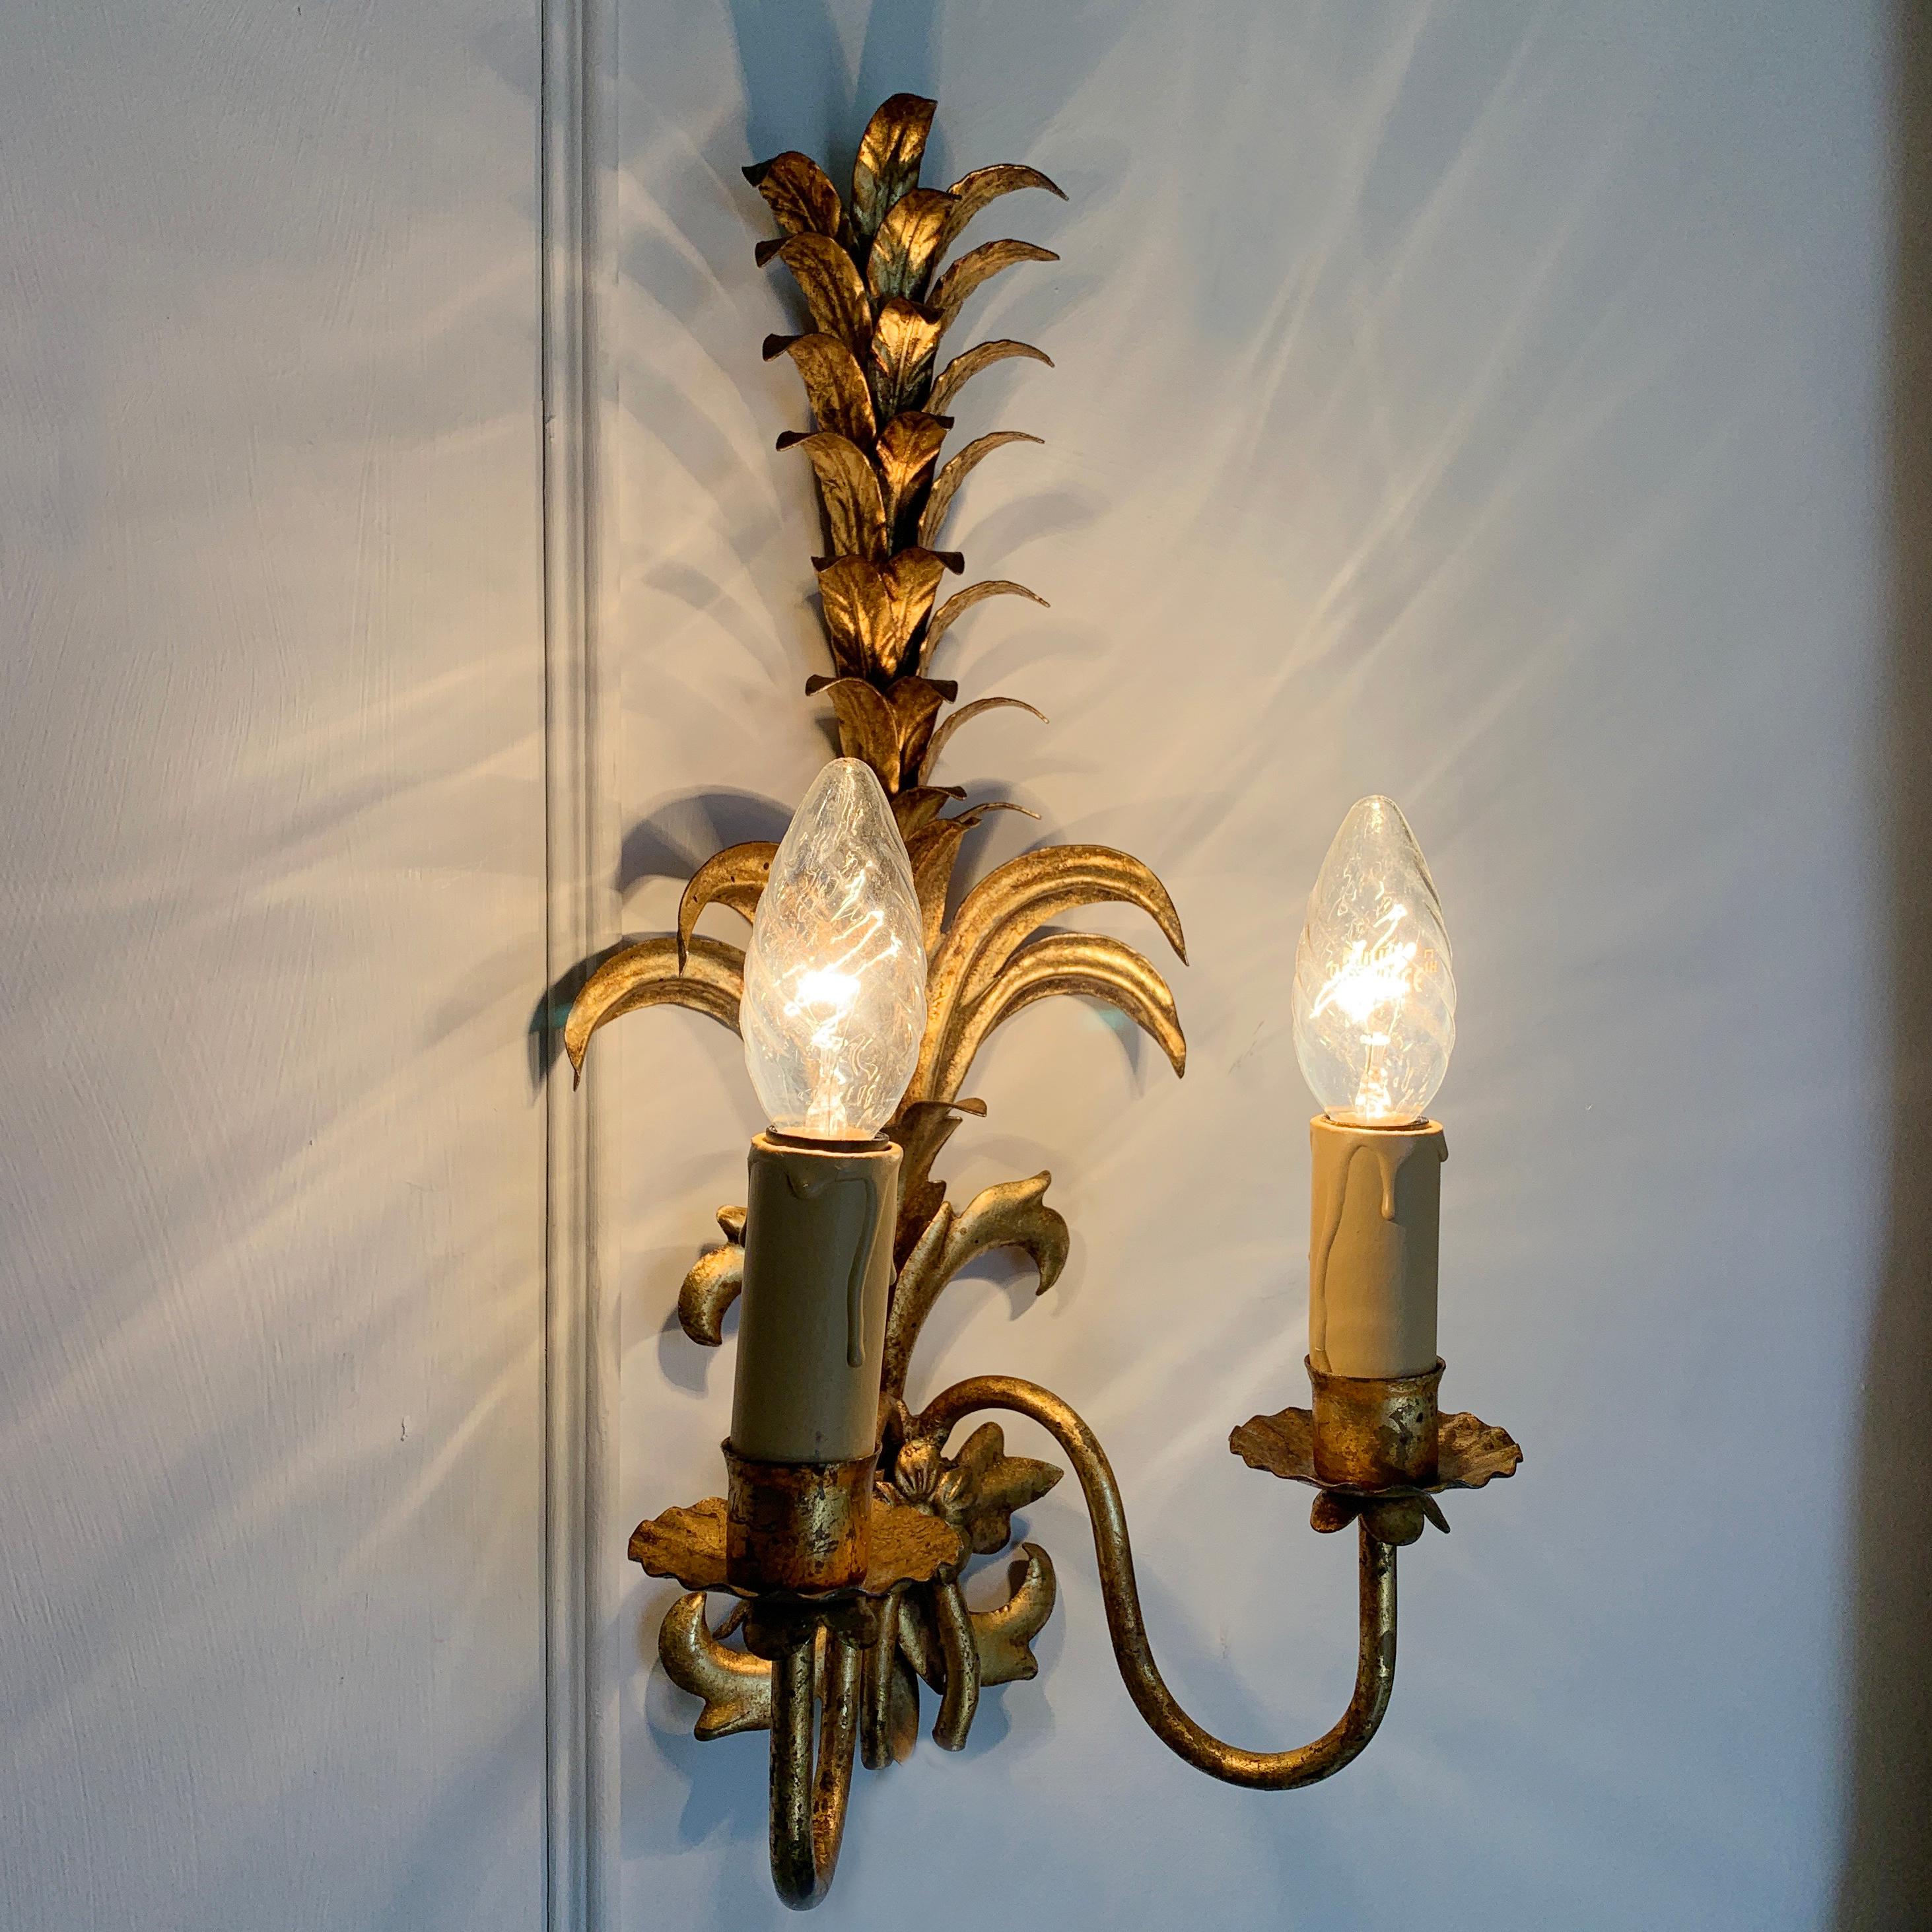 Une belle paire d'appliques en fronde d'ananas dorées. Français, datant des années 1950, il présente des détails complexes et une étonnante finition dorée naturaliste.

Chacune des lampes en métal doré est munie de deux porte-lampes.

Petites